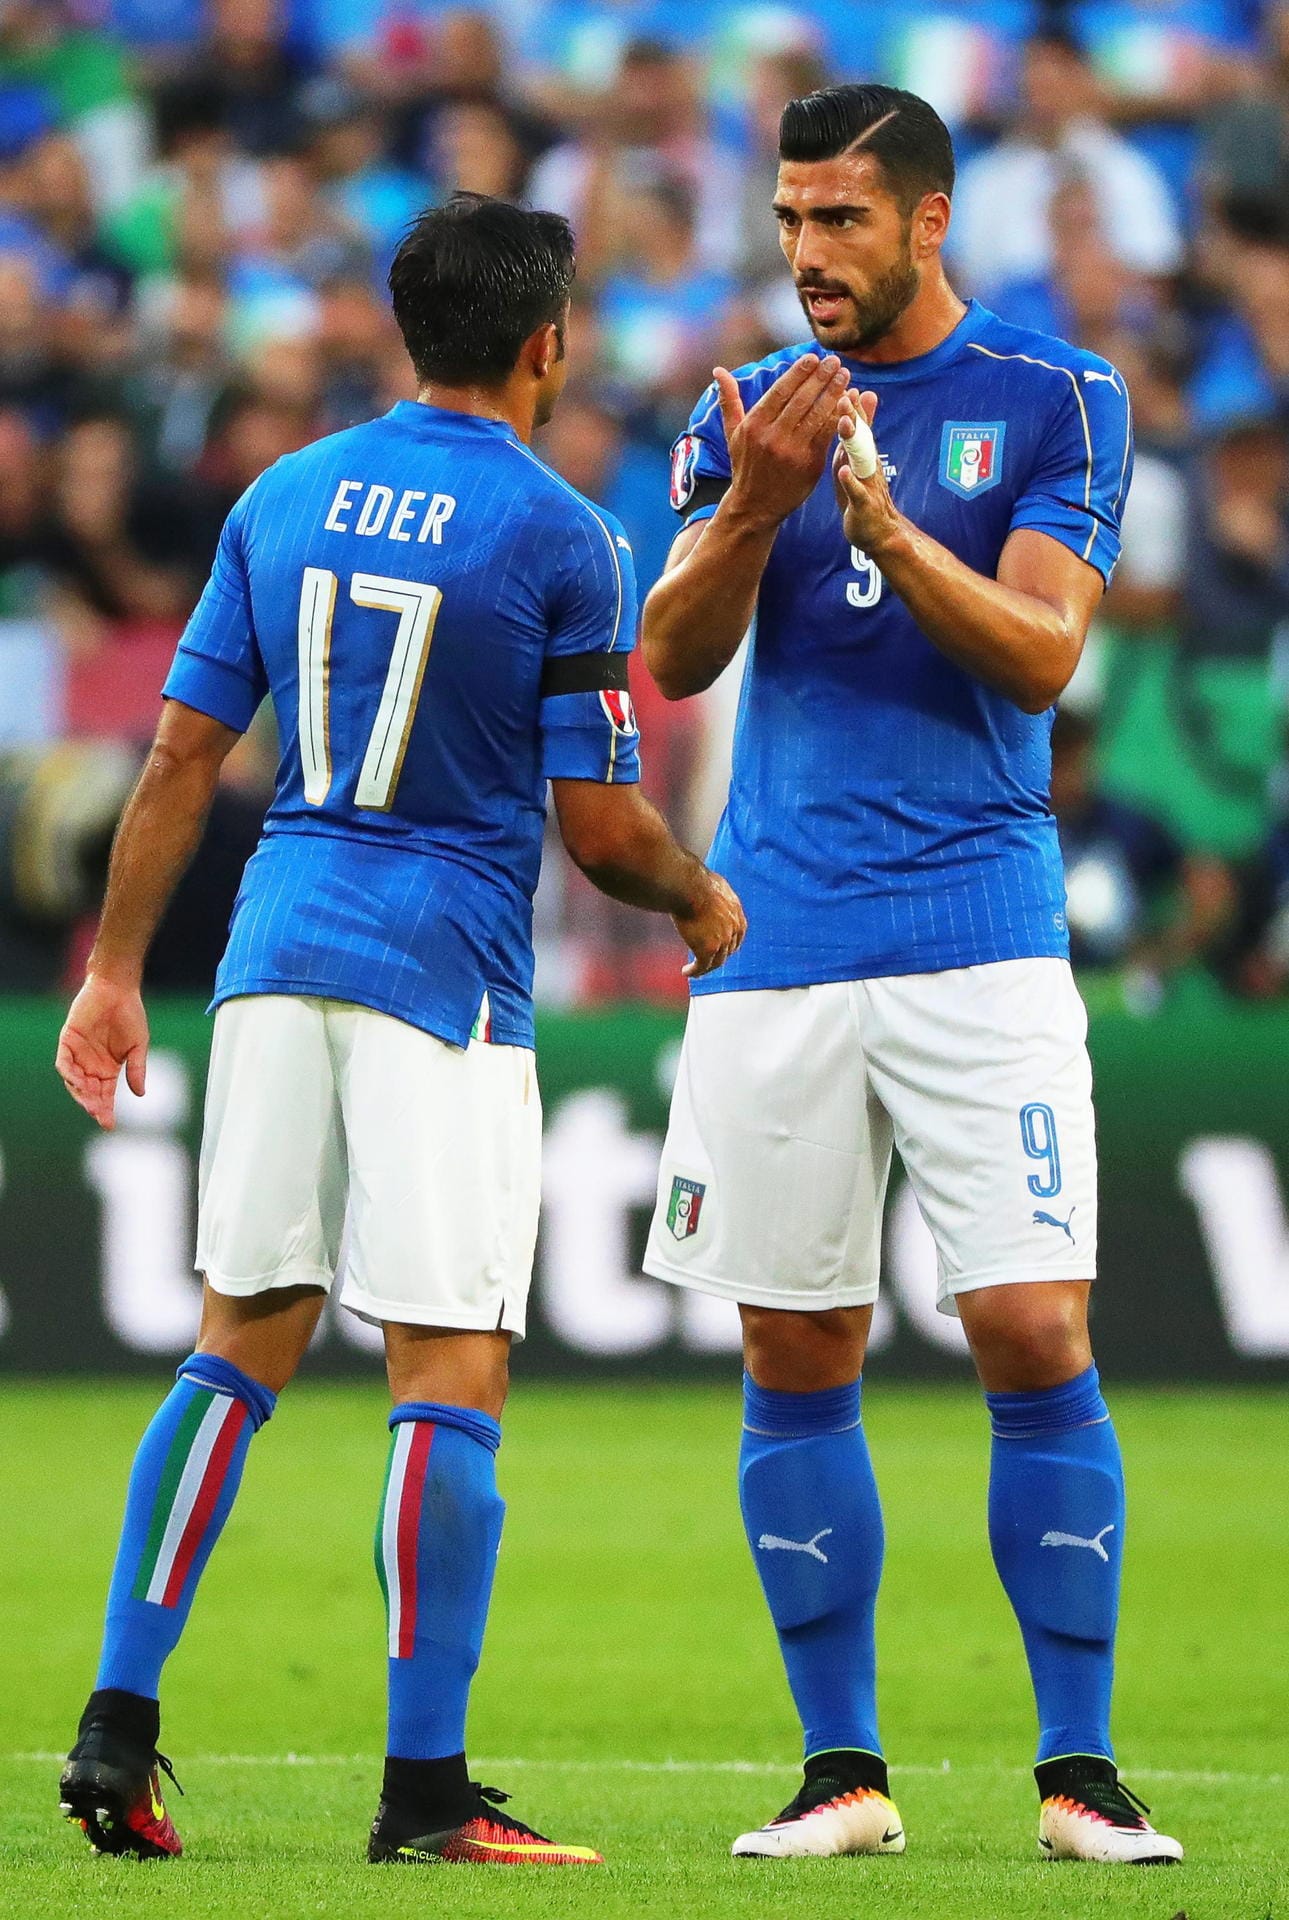 Jetzt ist Italien gefordert - doch der Offensivabteilung um Eder (li.) und Graziano Pelle gelingt weiterhin herzlich wenig. In der 74. Minute taucht Pelle dann frei vor Neuer auf, doch sein wuchtiger Linksschuss geht knapp drüber.